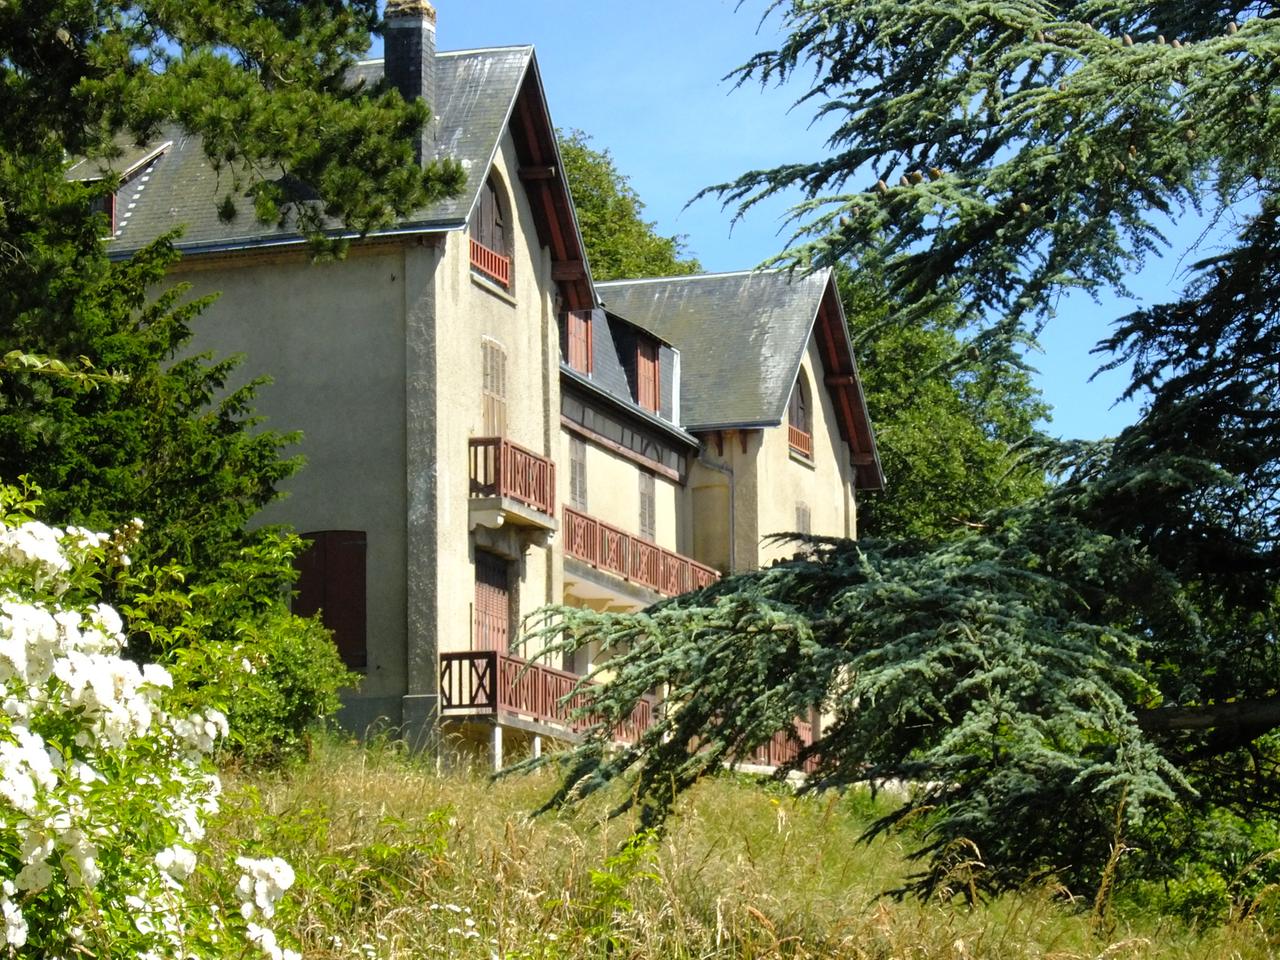 Die "Villa Orphée" des Komponisten Jacques Offenbach - seit Jahren Leerstand und Verfall